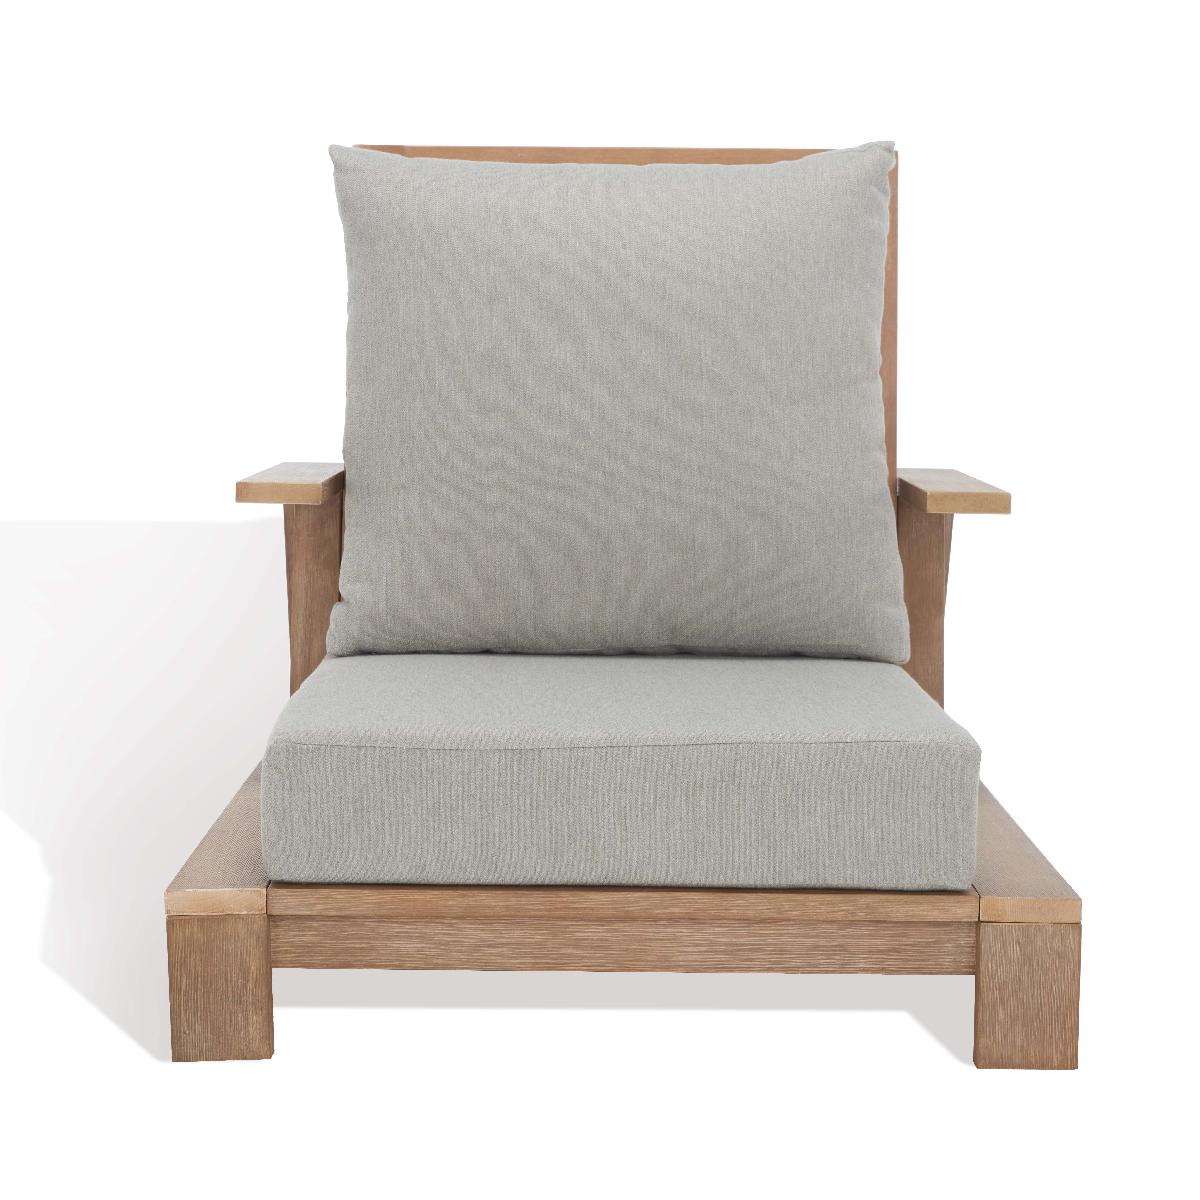 Safavieh Lanai Wood Patio Chair, Dark Brown / Beige